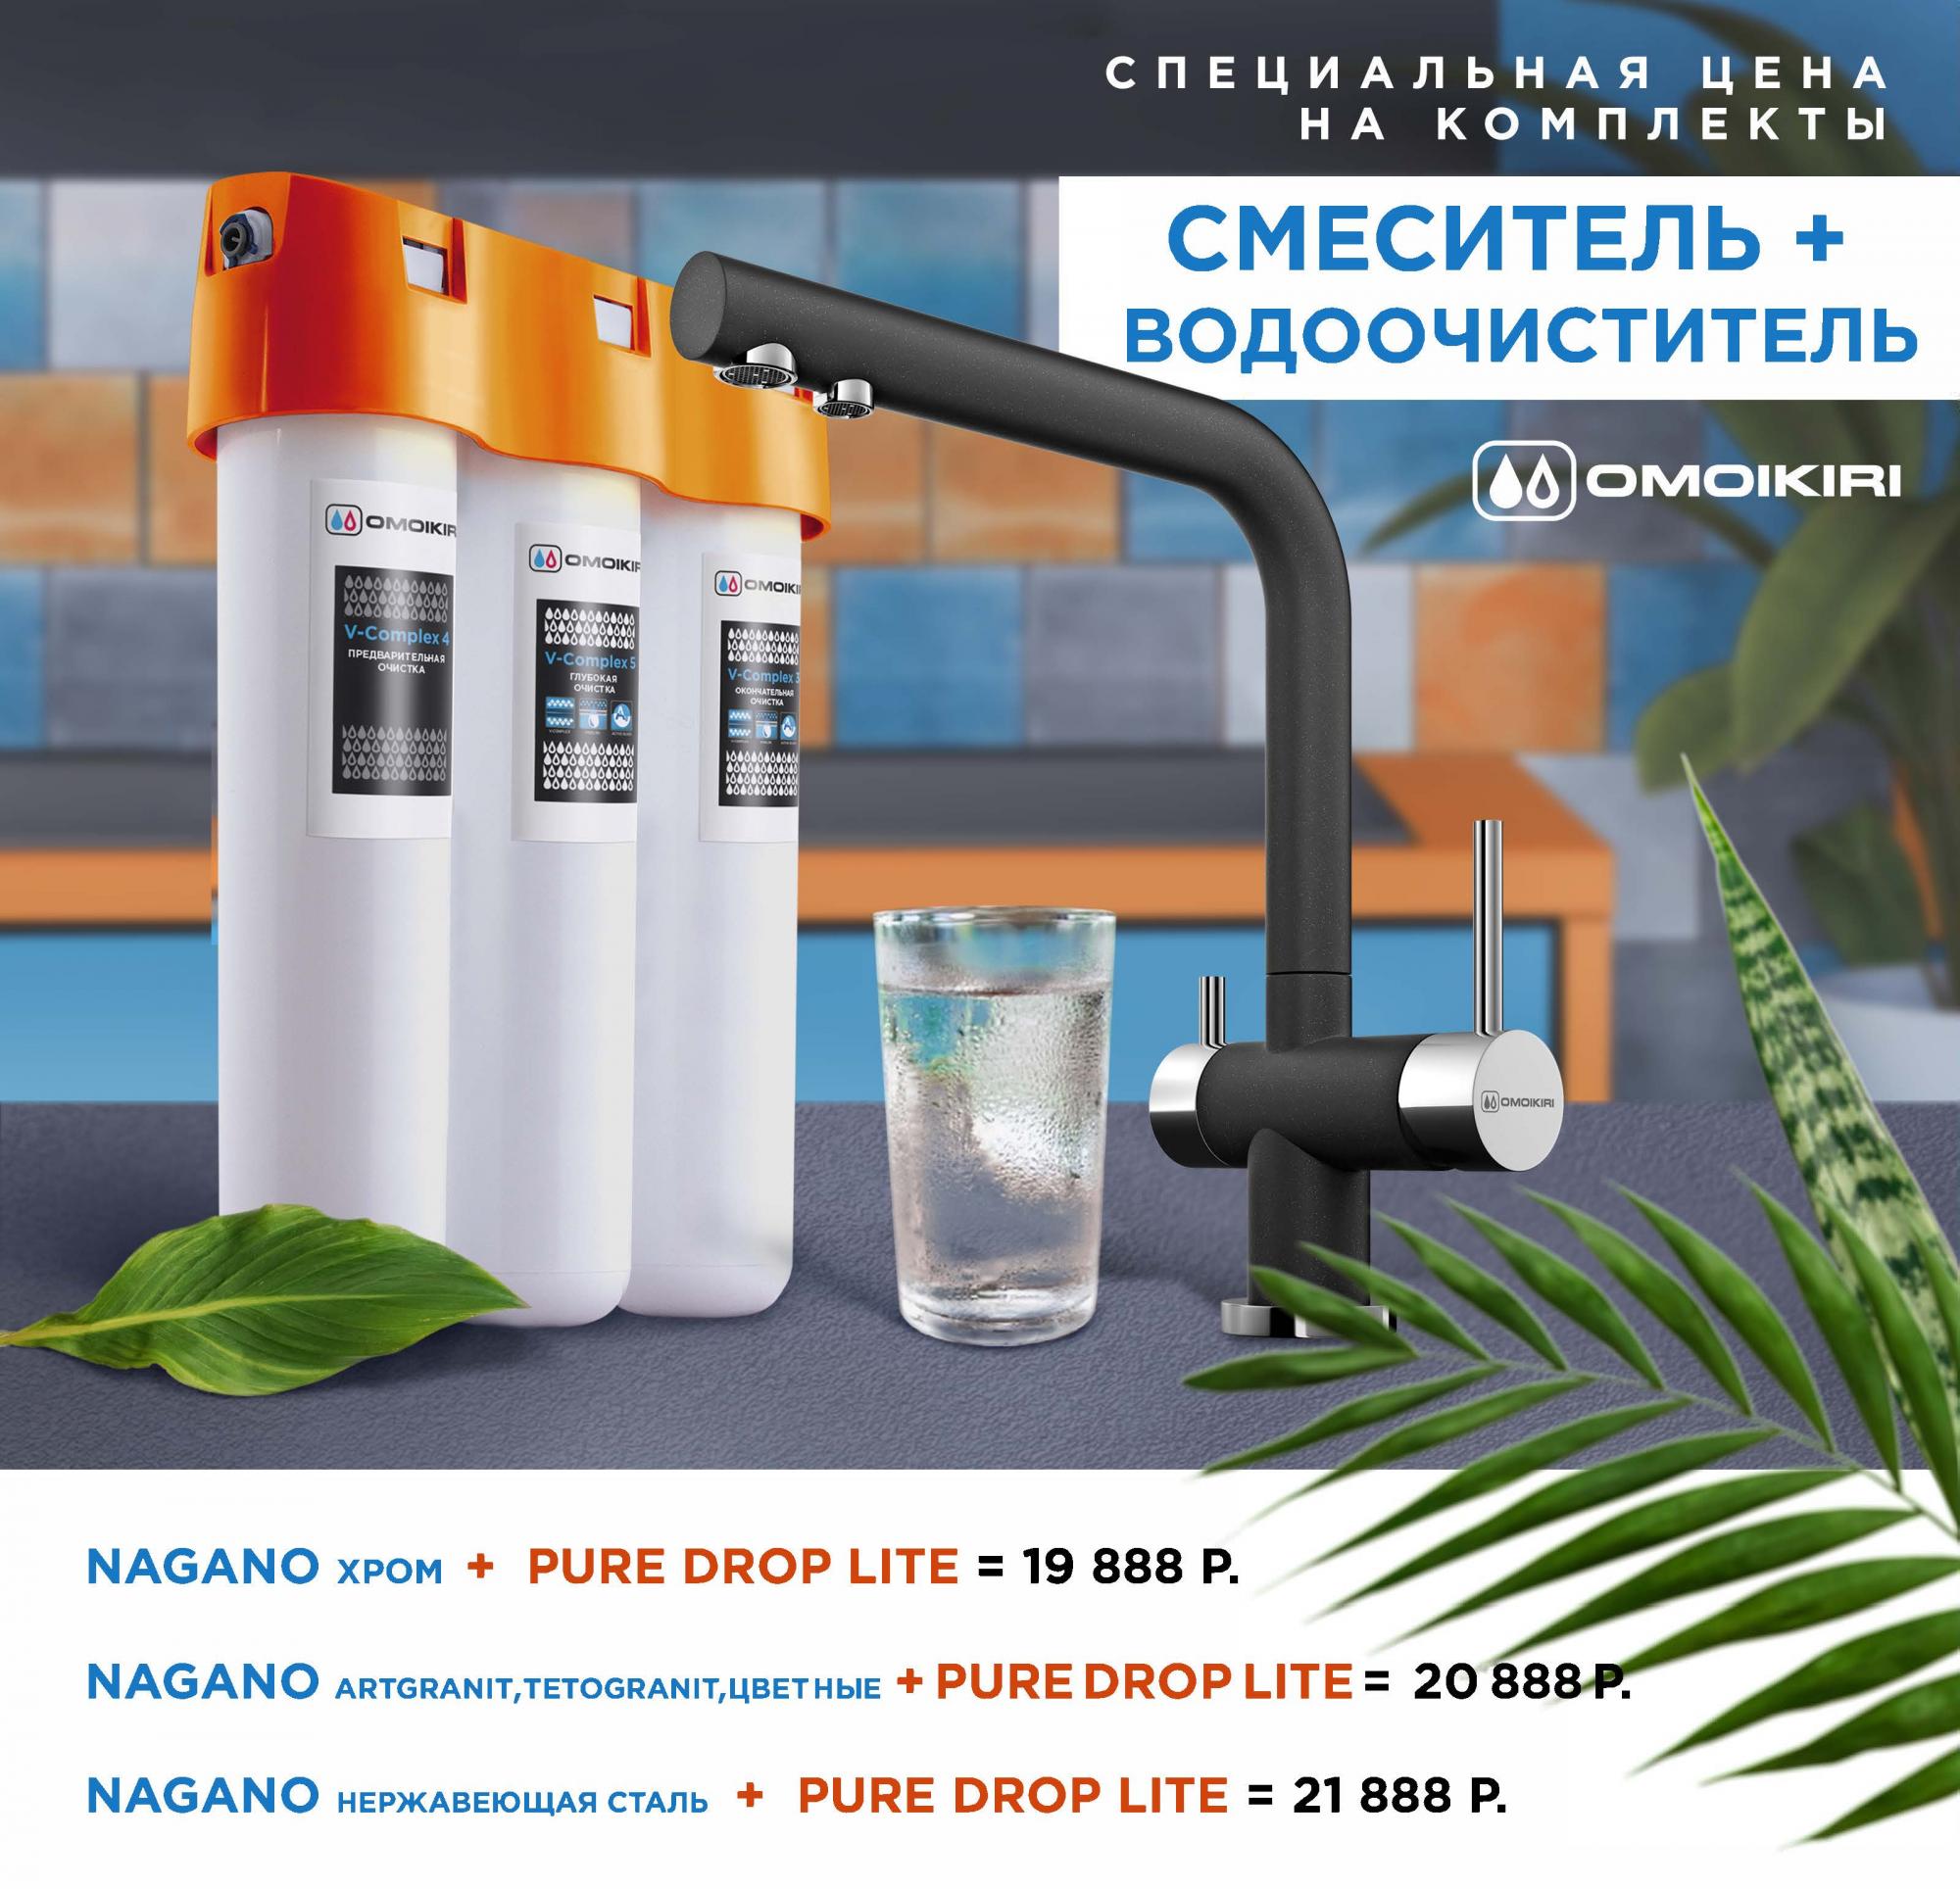 Смеситель Nagano + водоочиститель Pure drop Lite по выгодной цене